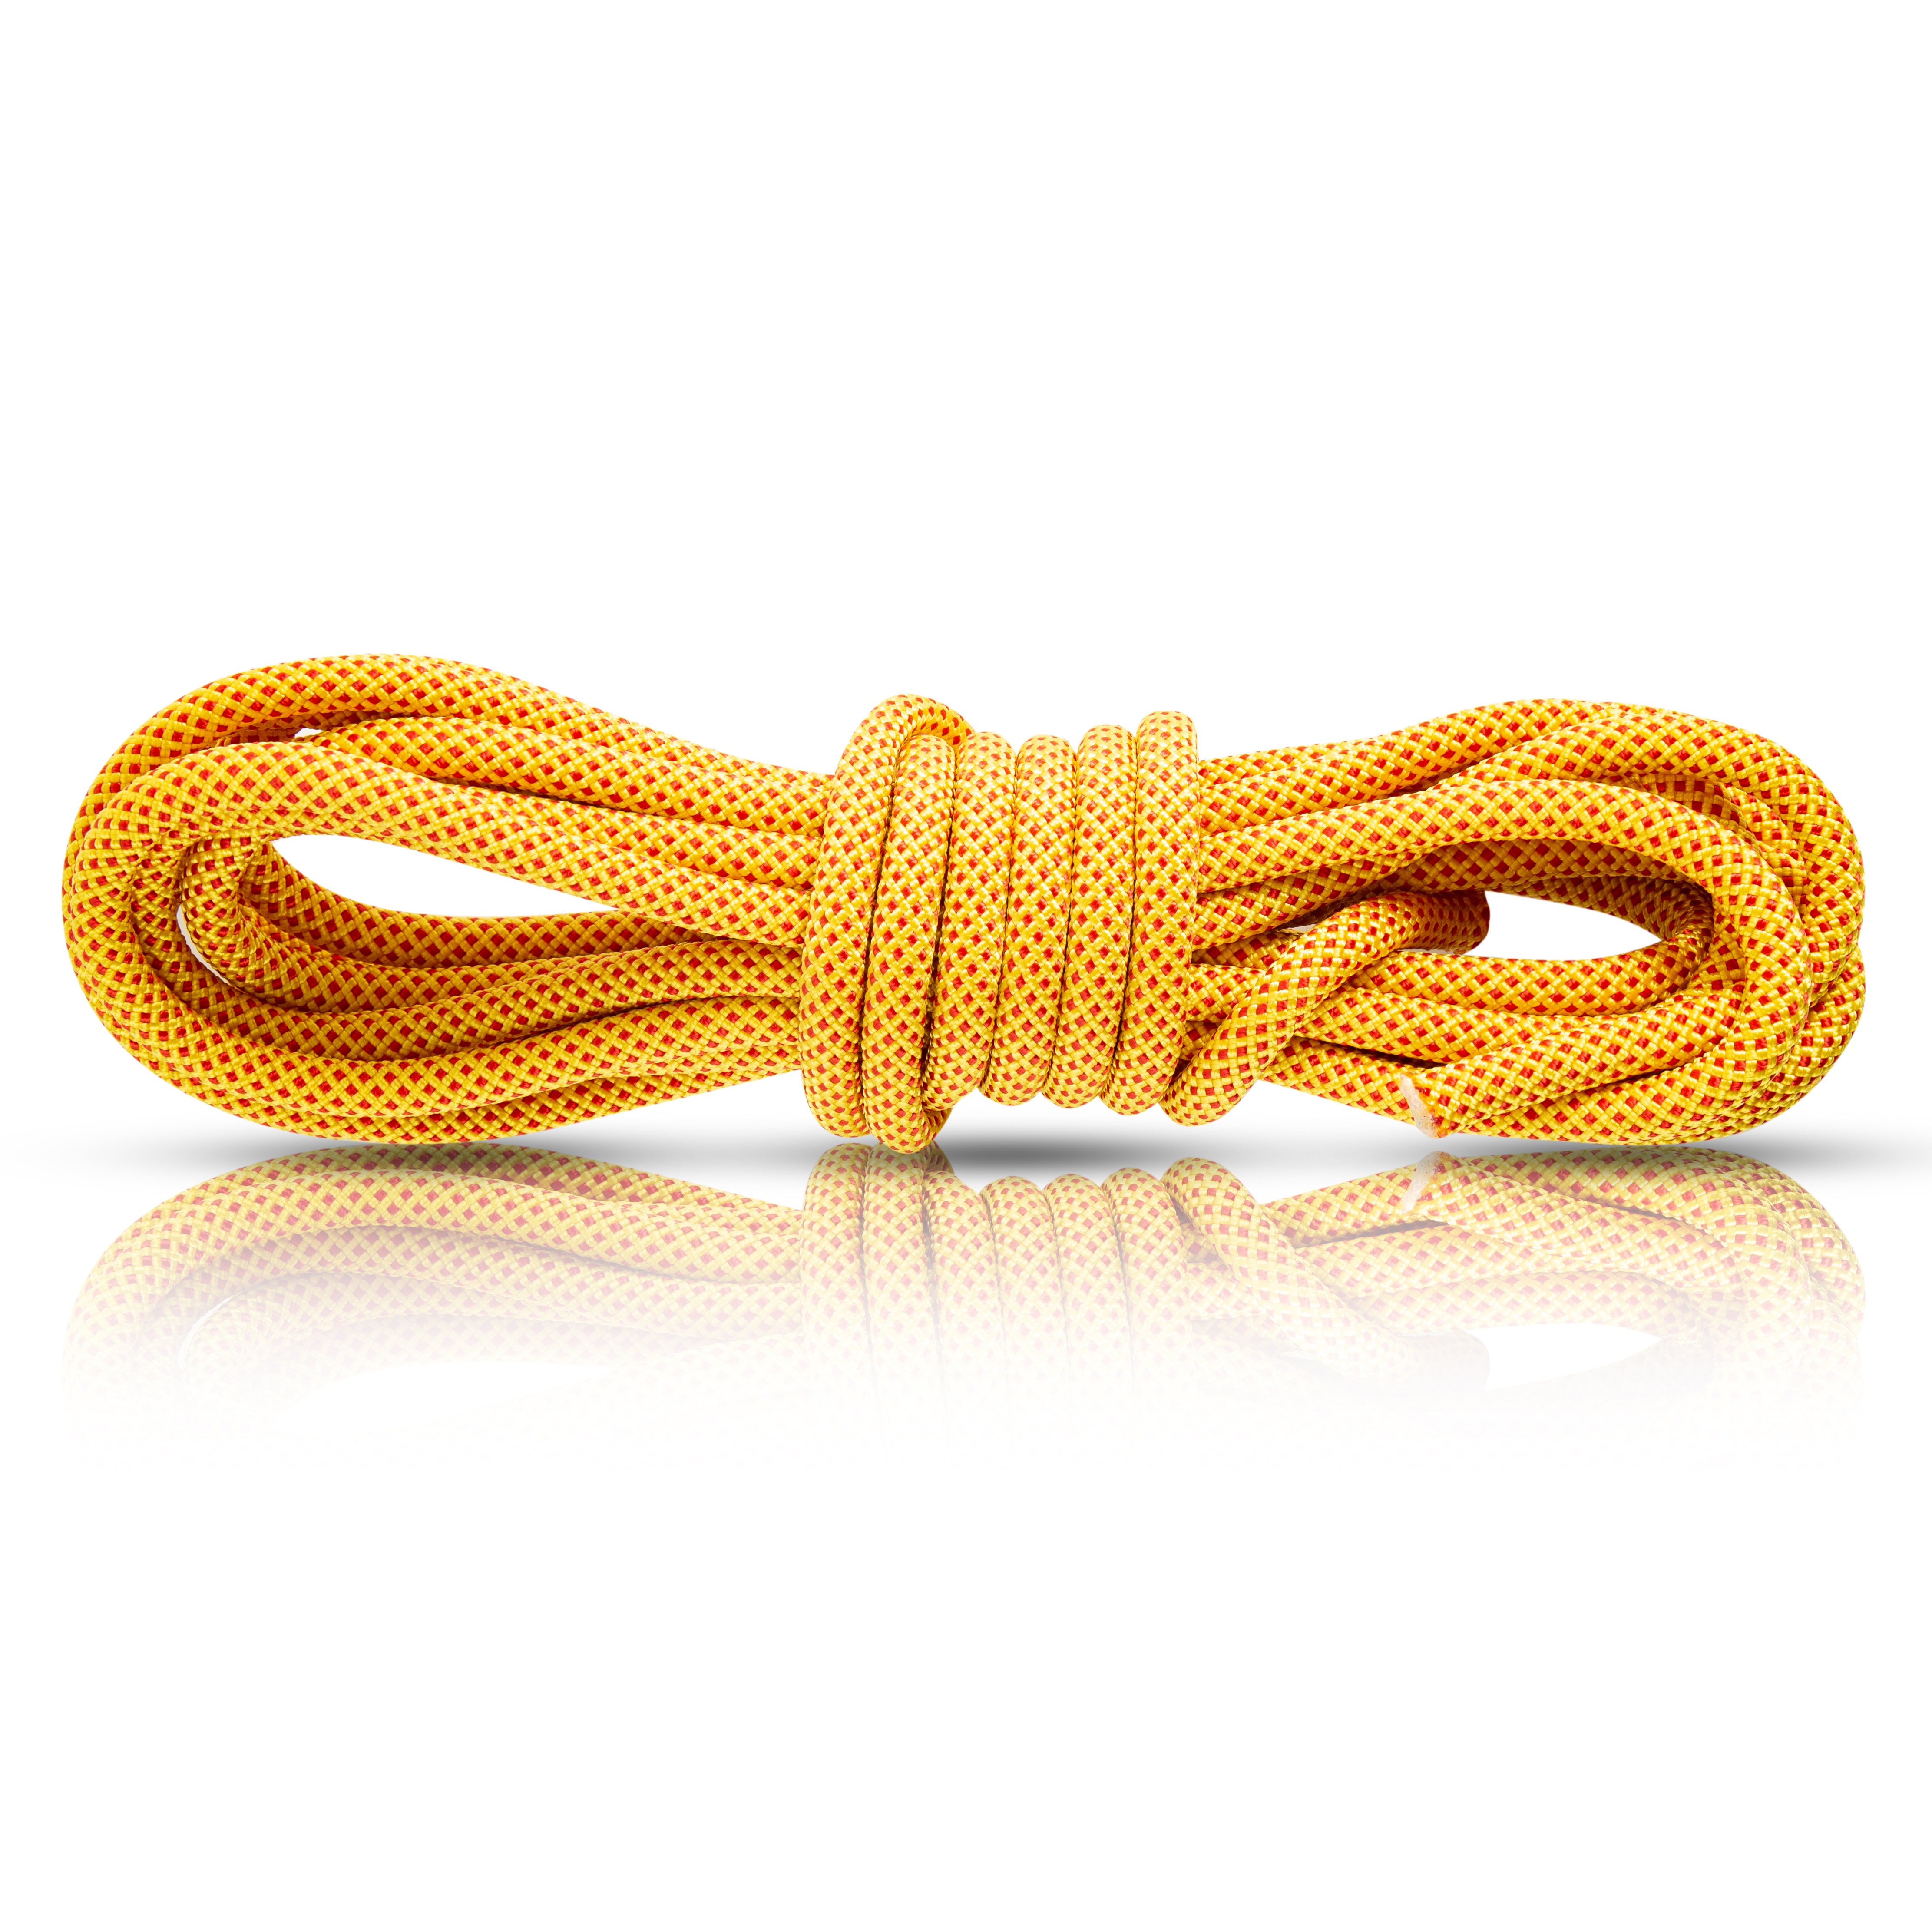 登山绳保险绳索静力绳 野外攀爬速降救生救援装备用品高空作业安全绳 攀岩绳户外